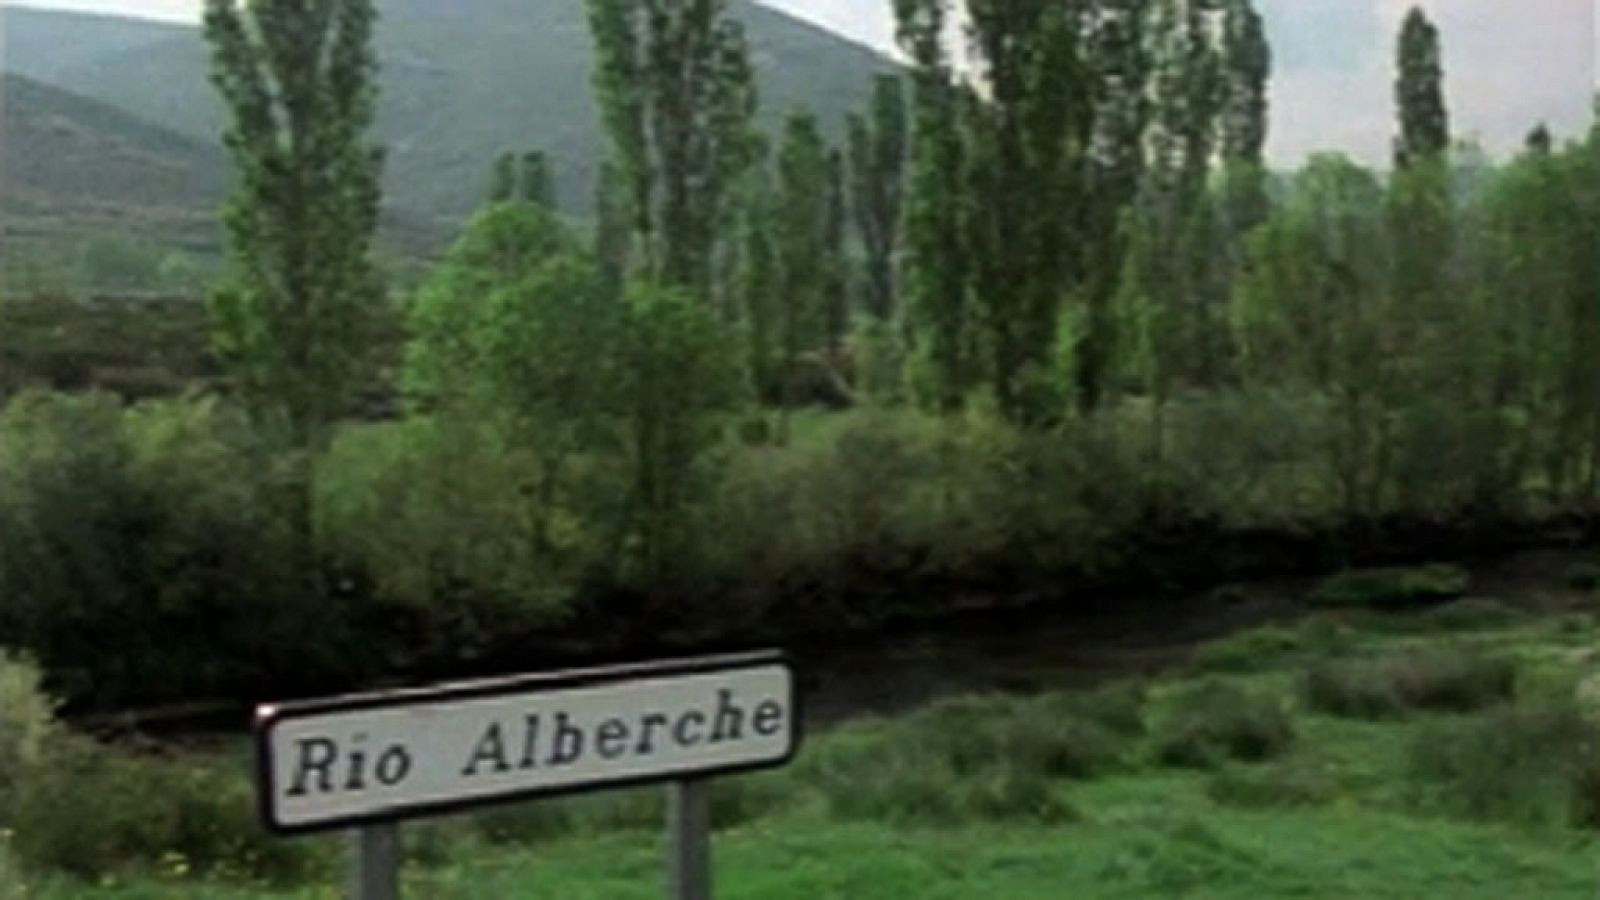 Los ríos - Alberche